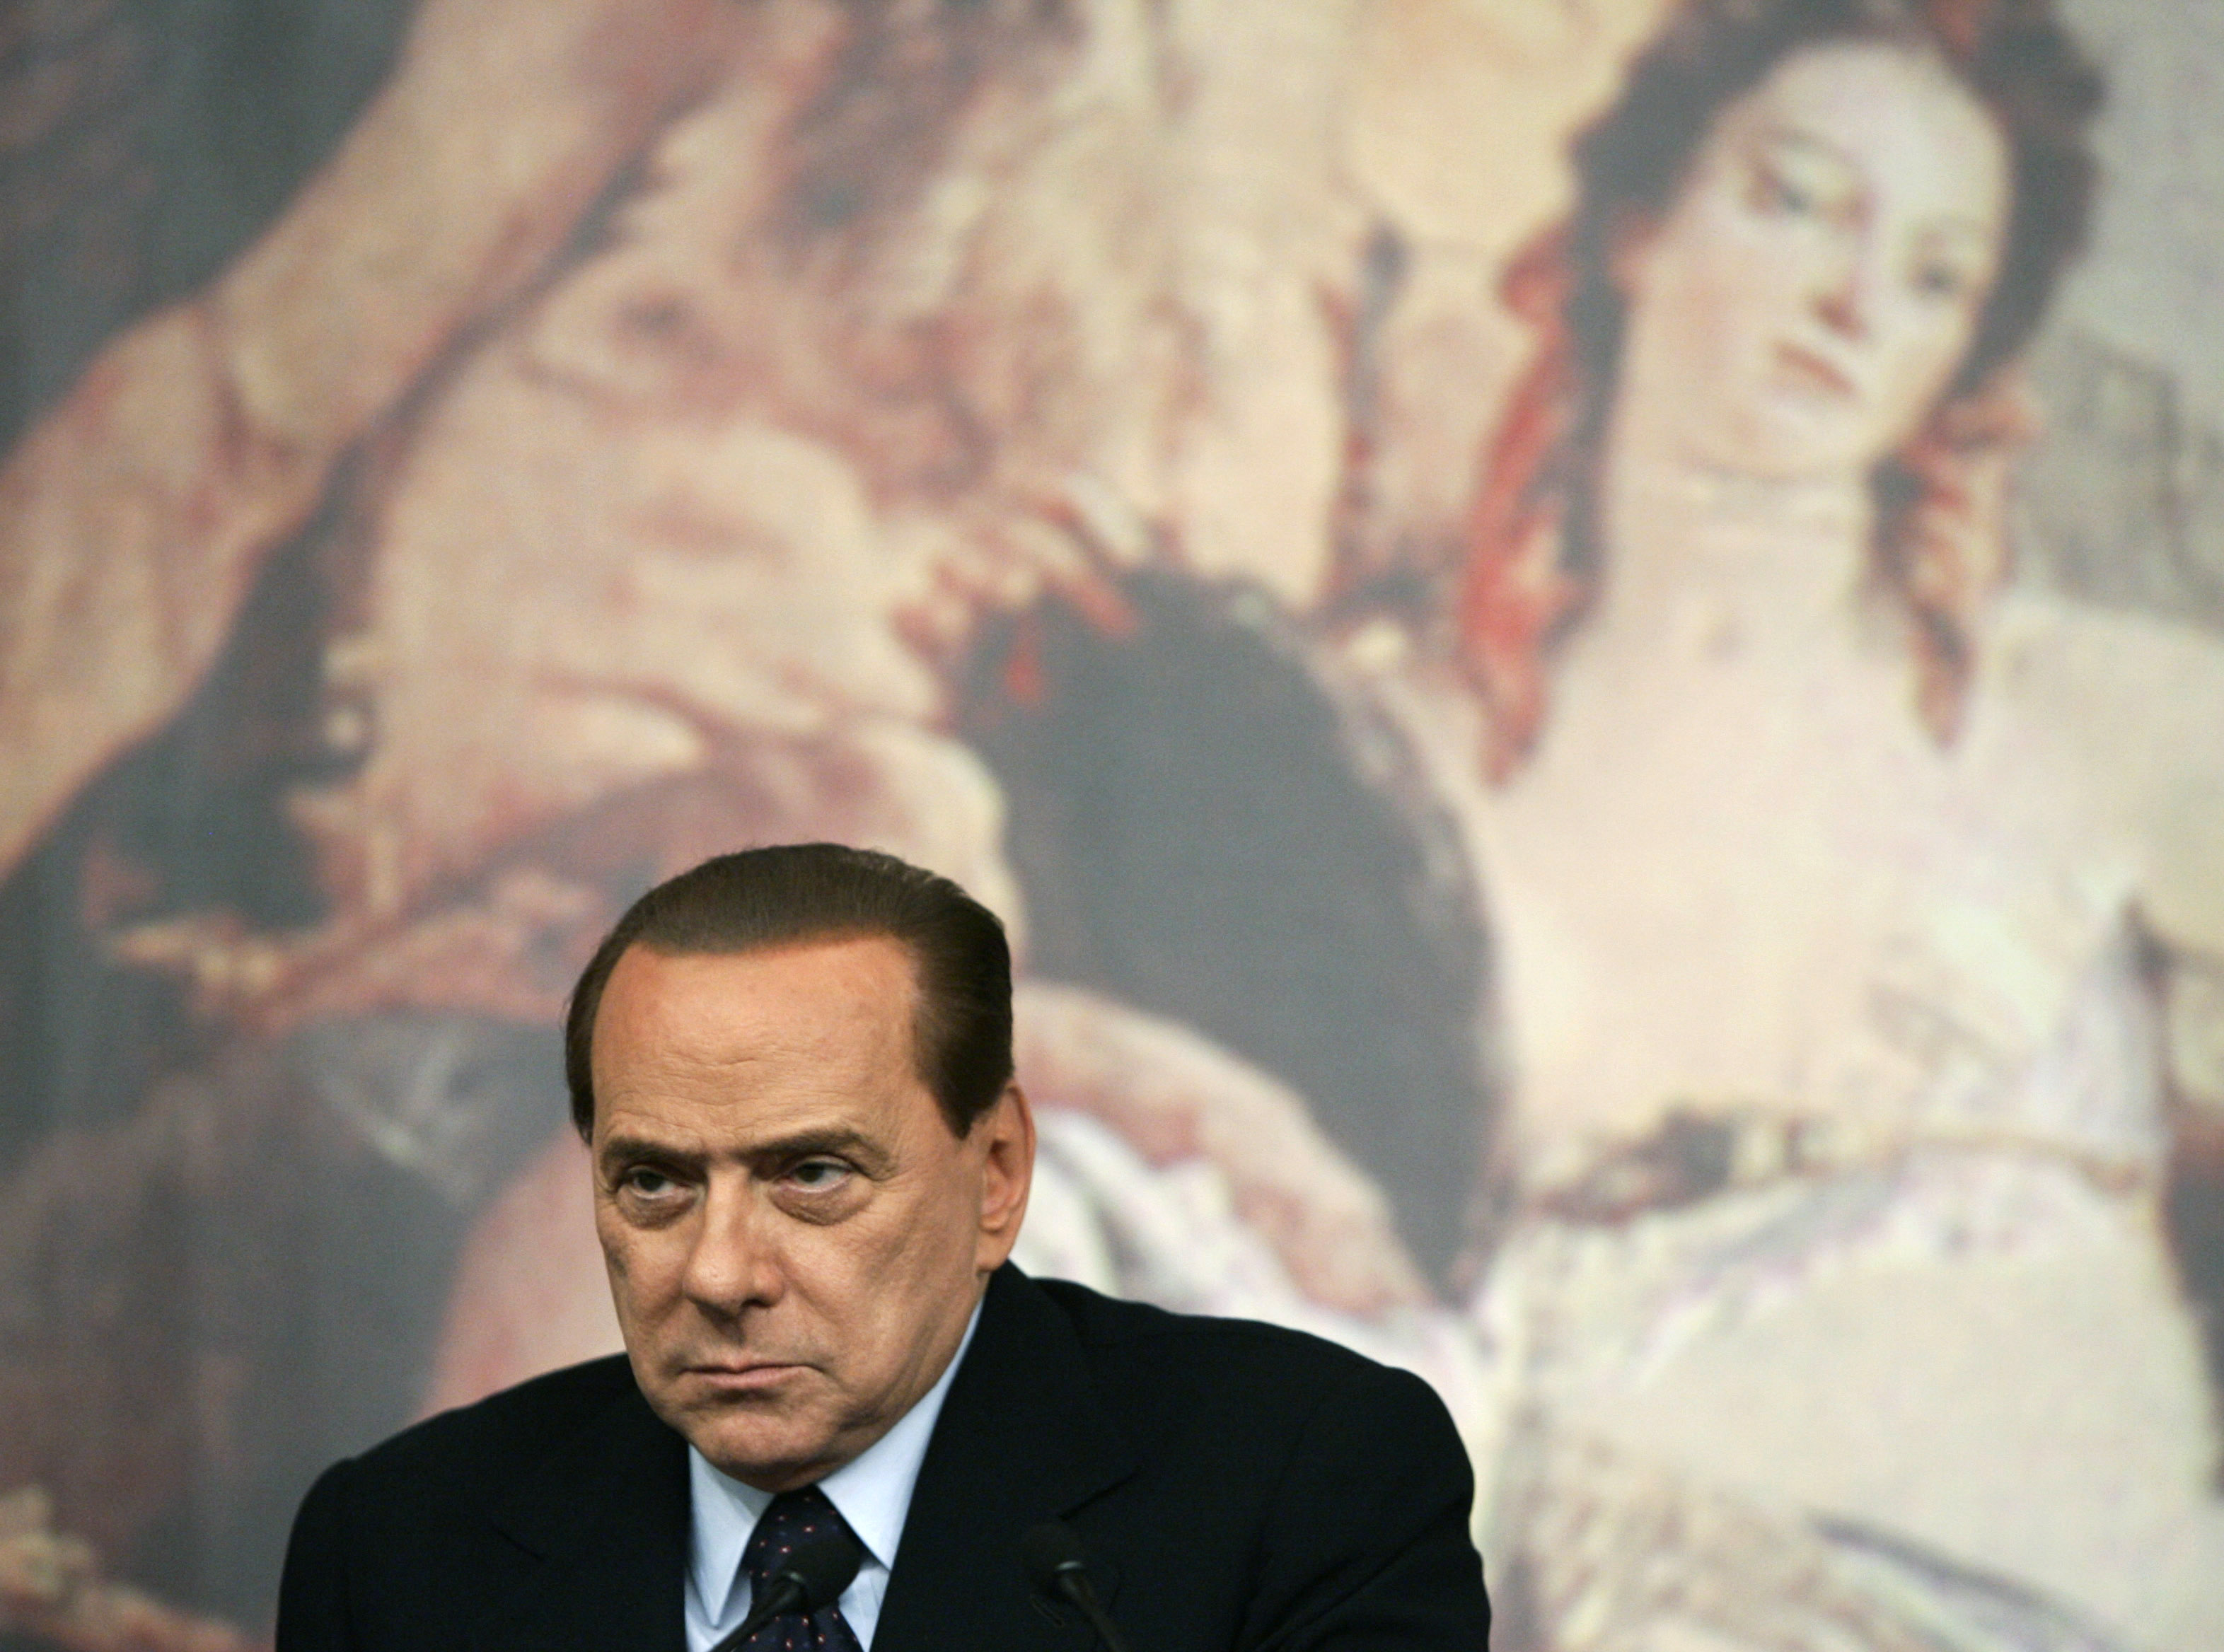 "Jag har sålt Zlatan", säger Milans president Silvio Berlusconi.